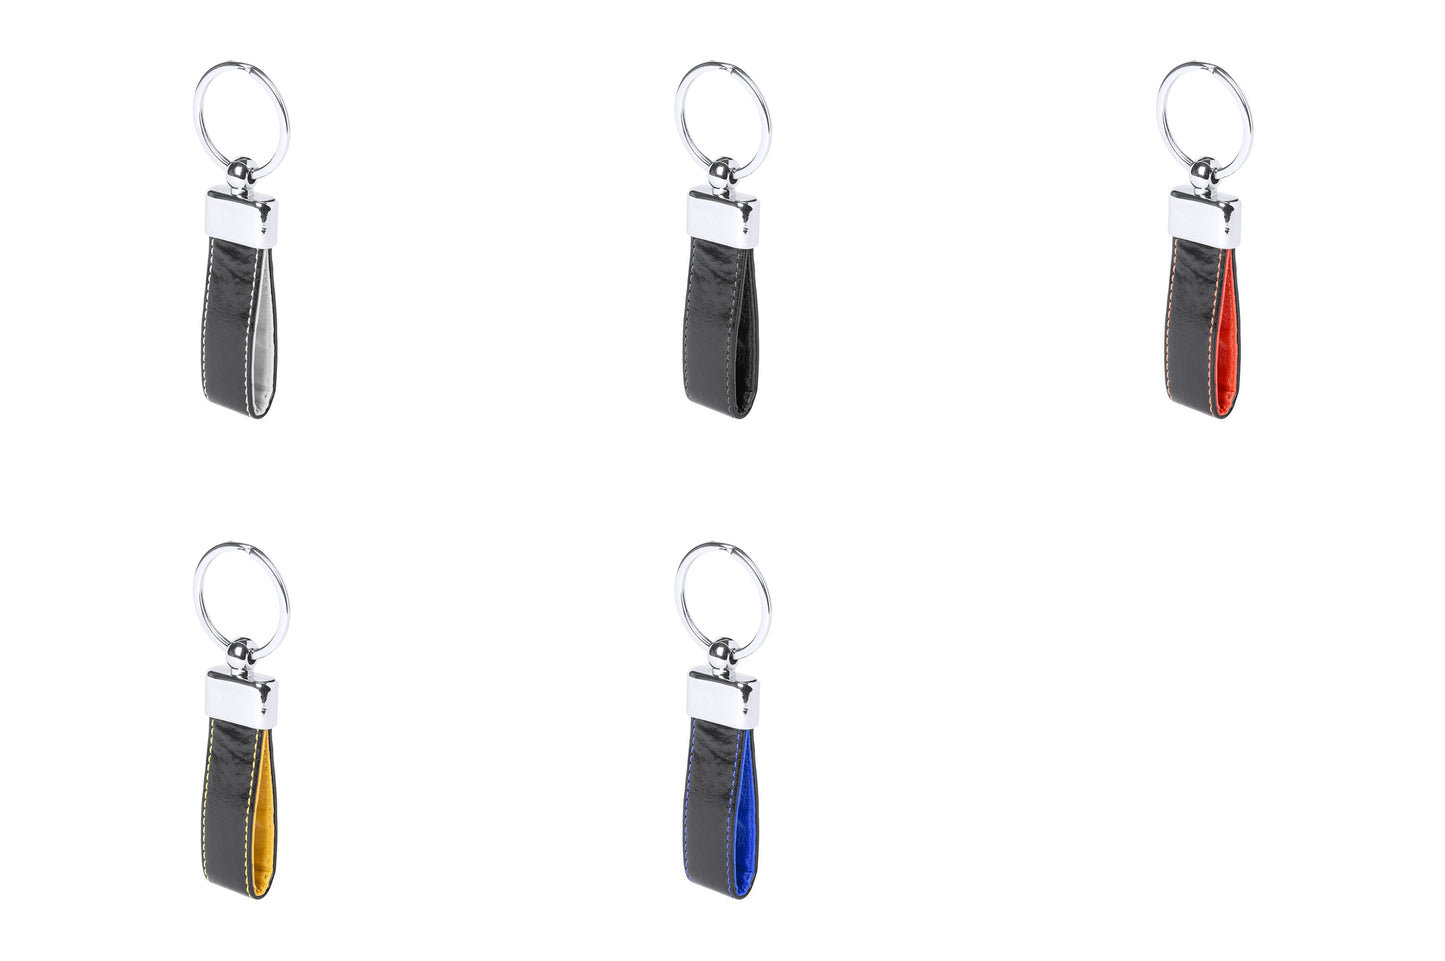 Porte-clés raffiné en similicuir bicolore avec détail métallique.